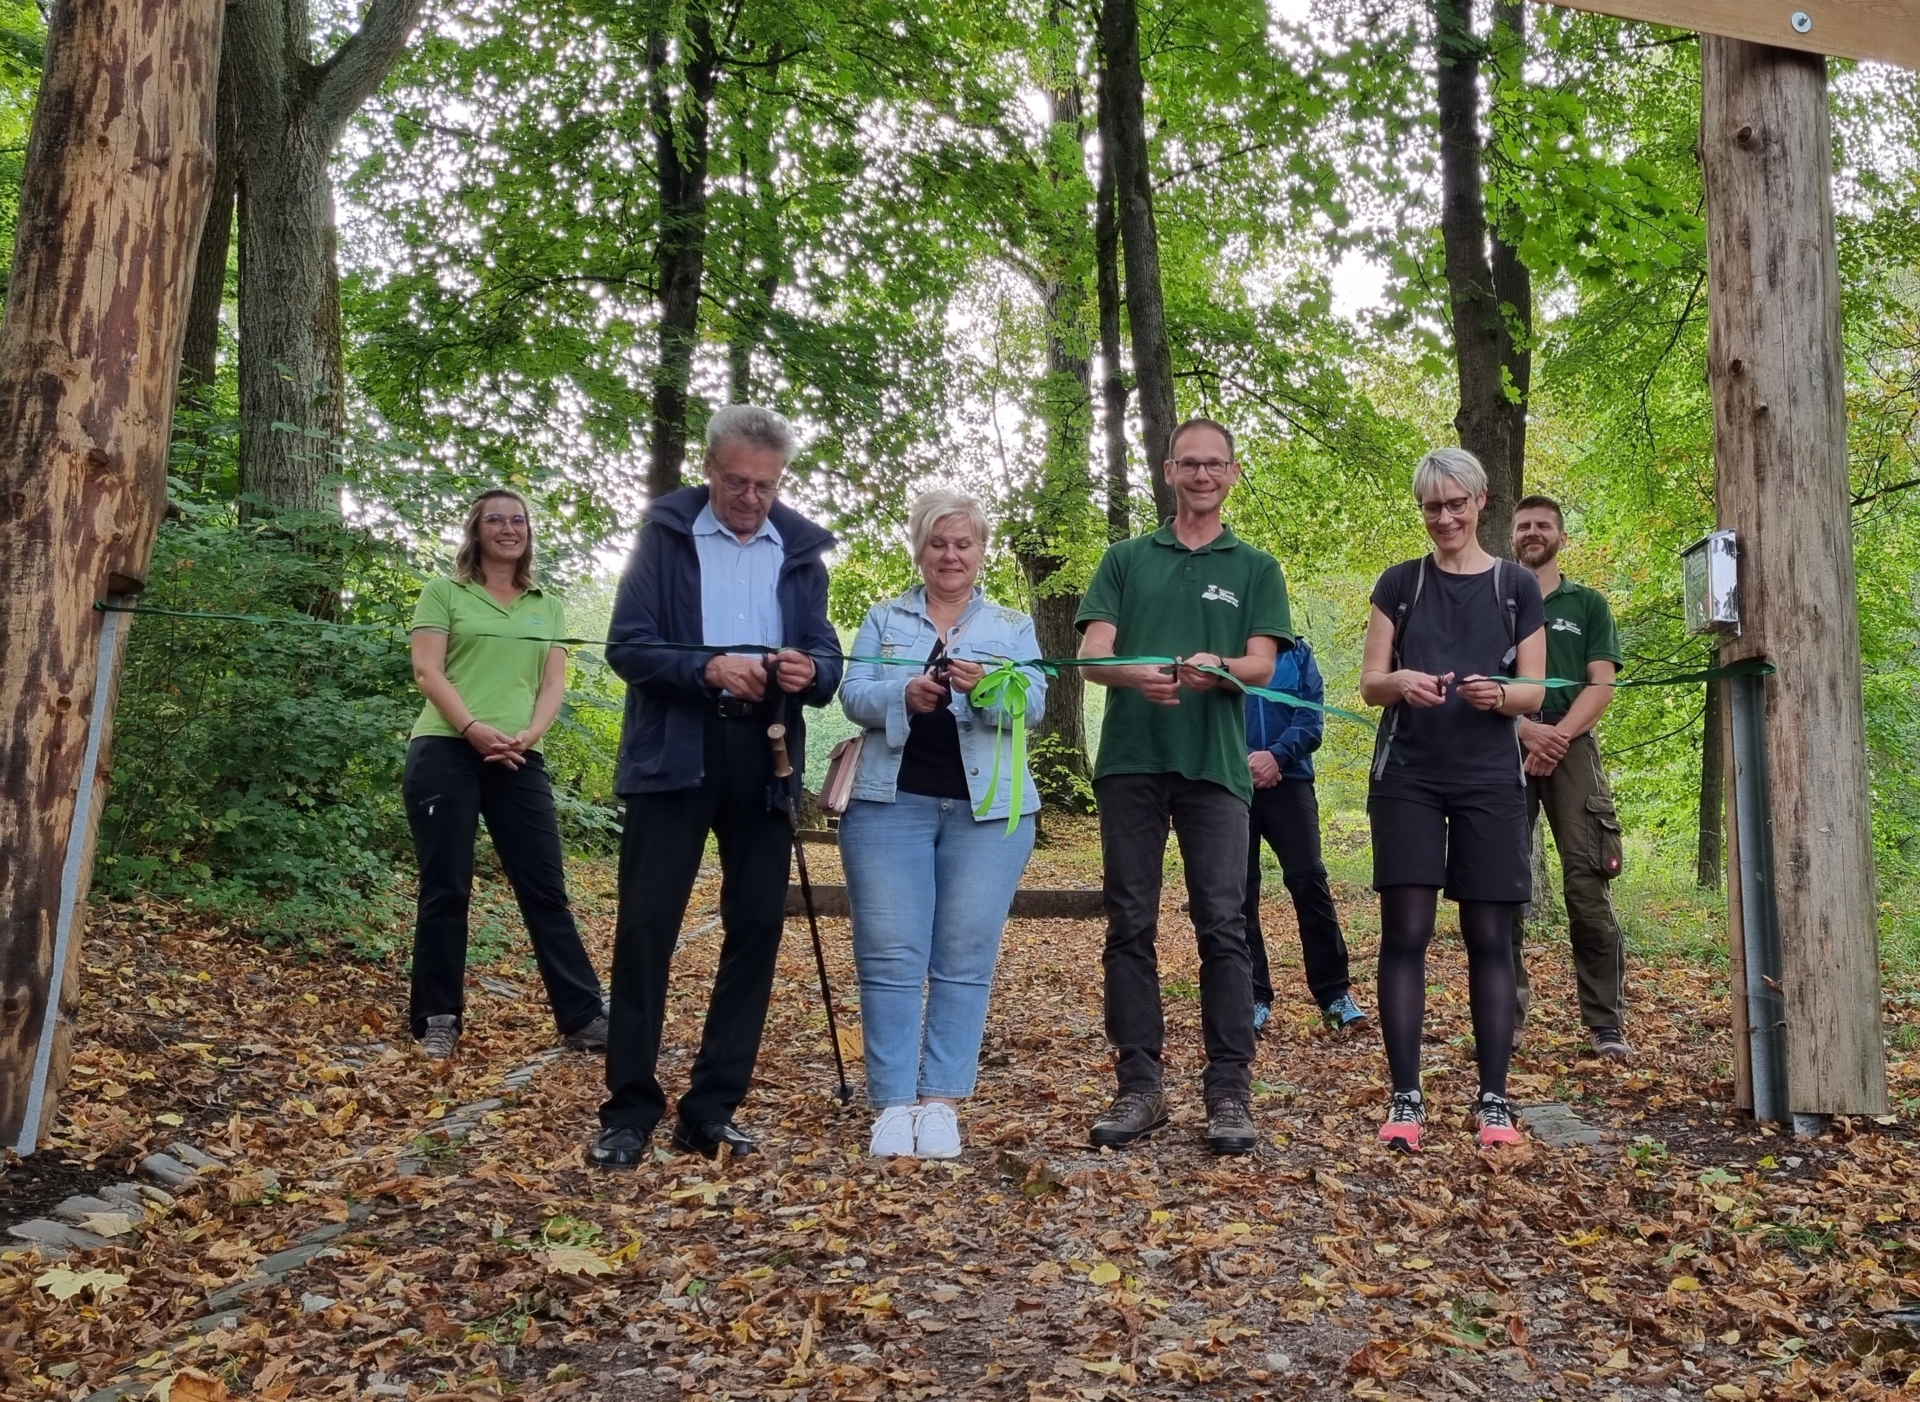 Bild: Feierliche Eröffnung mit Vertretern des Naturparks Thüringer Wald, des Schaumburgvereins, der Stadt Schalkau und der Naturpark-Meisterei